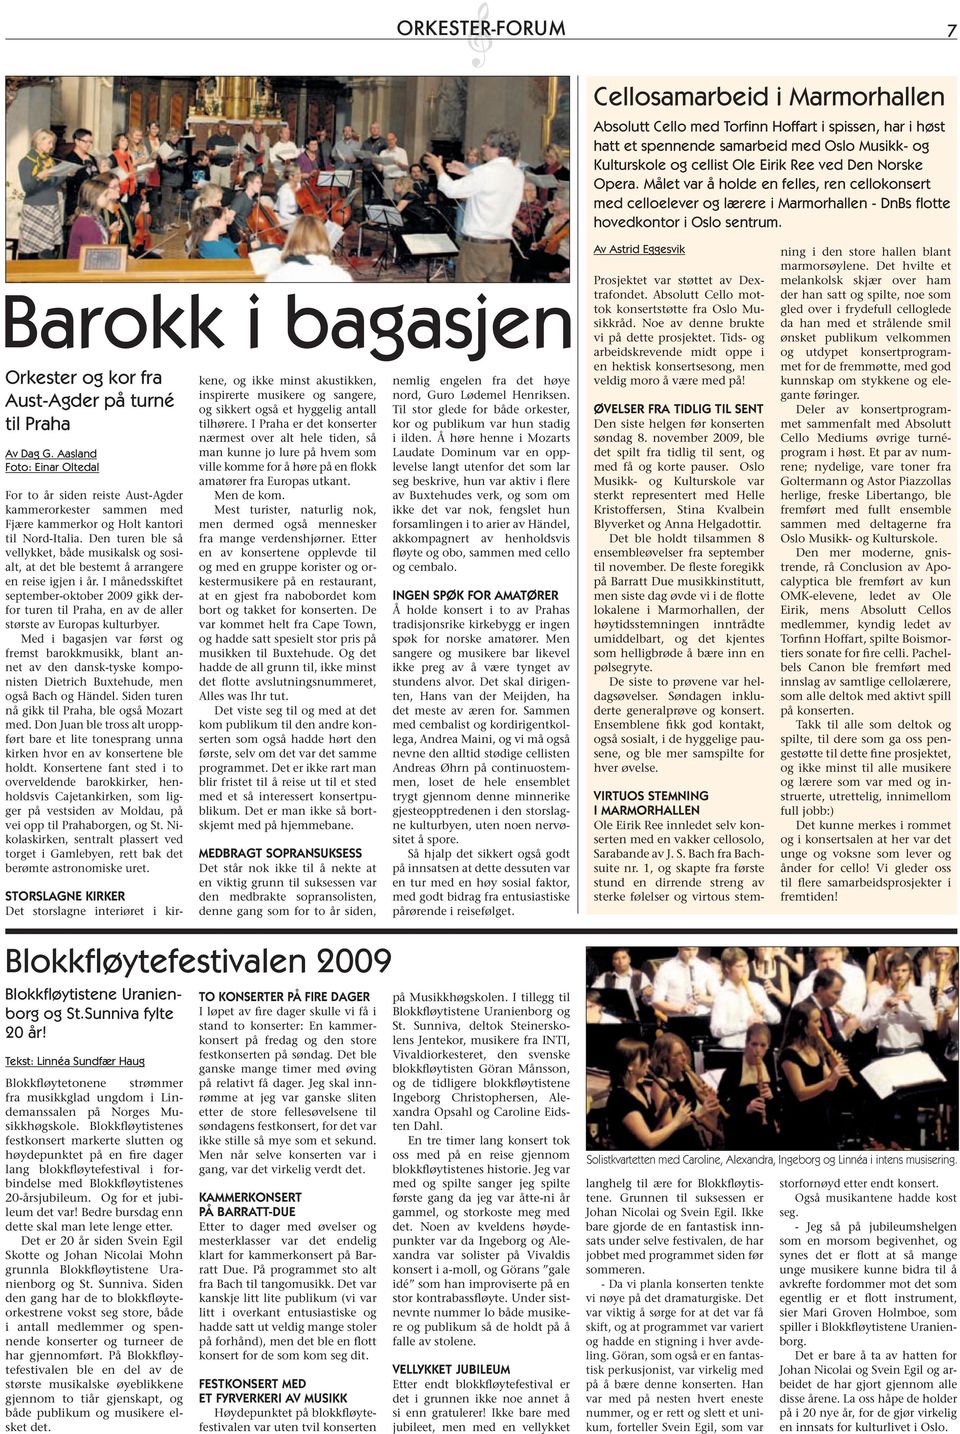 Barokk i bagasjen Orkester og kor fra Aust-Agder på turné til Praha Av Dag G.